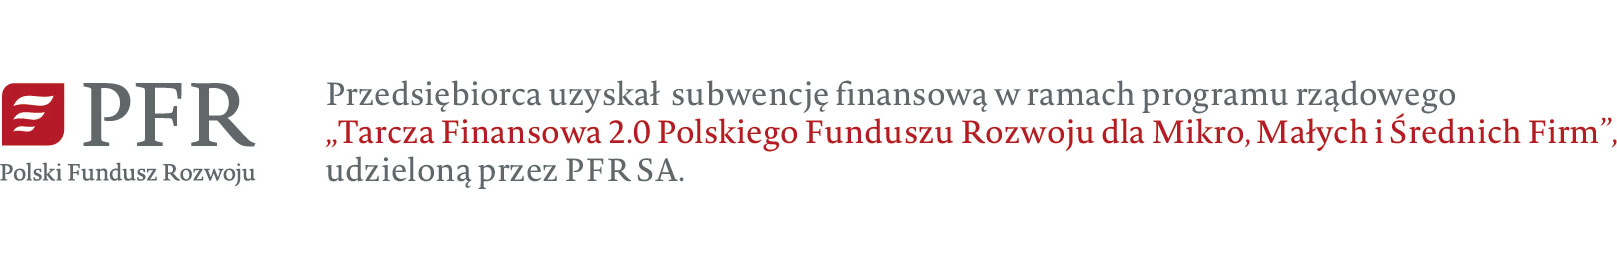 Tarcza finansowa 2.0 Polskiego Funduszu Rozwoju dla Mikro, Małych i Średnich Firm